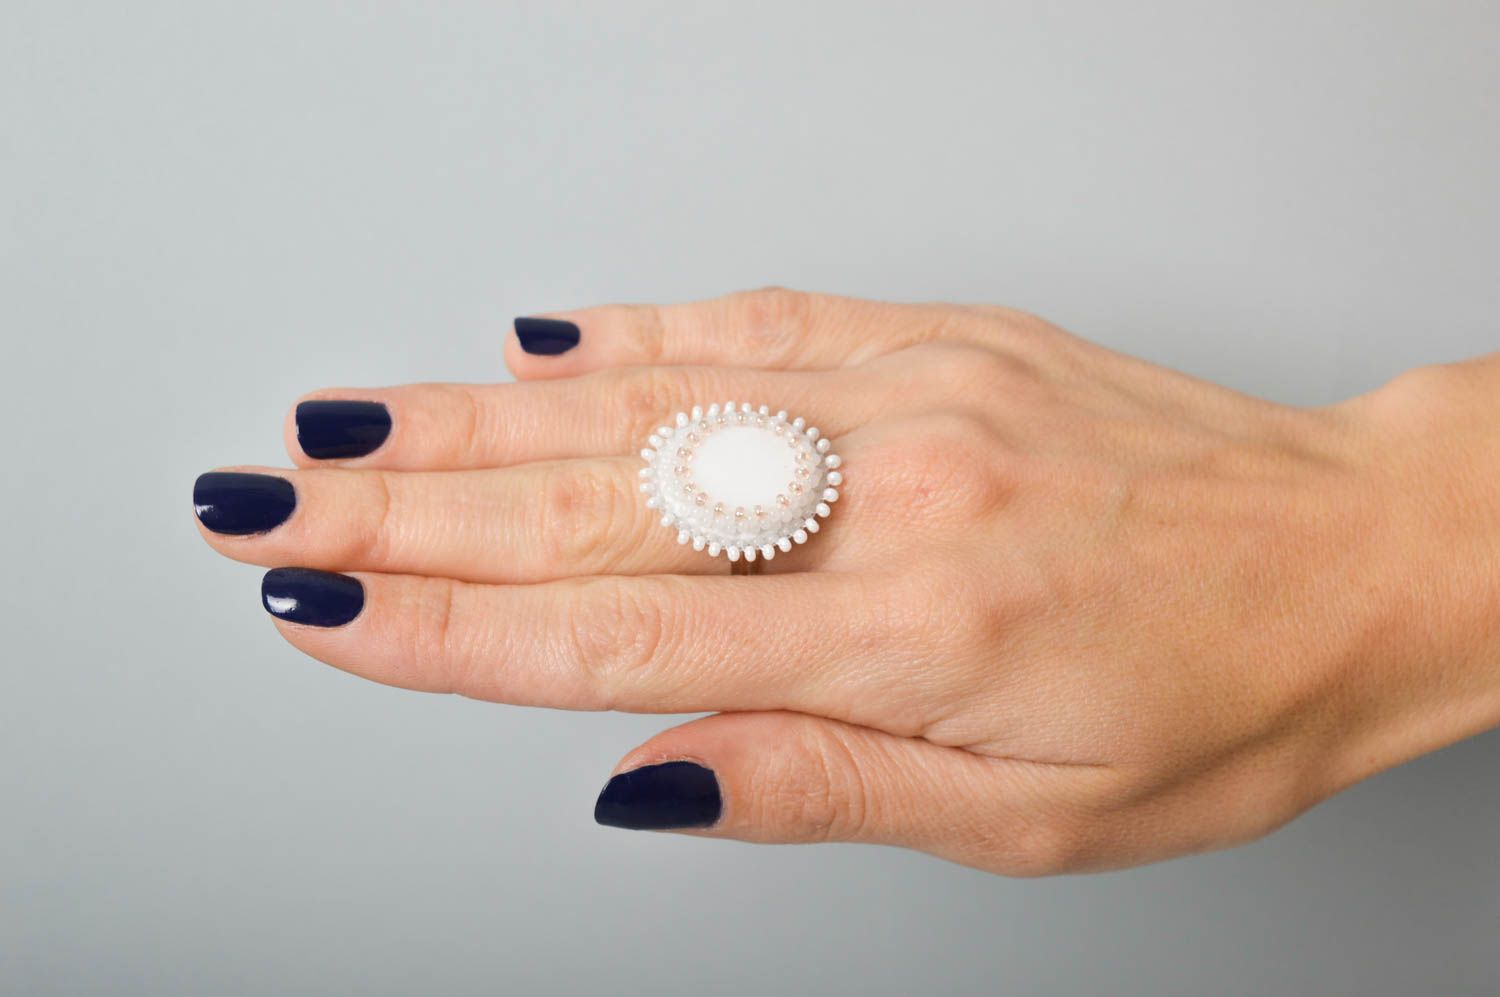 Красивое кольцо ручной работы необычное кольцо с бисером белое кольцо из кожи фото 2